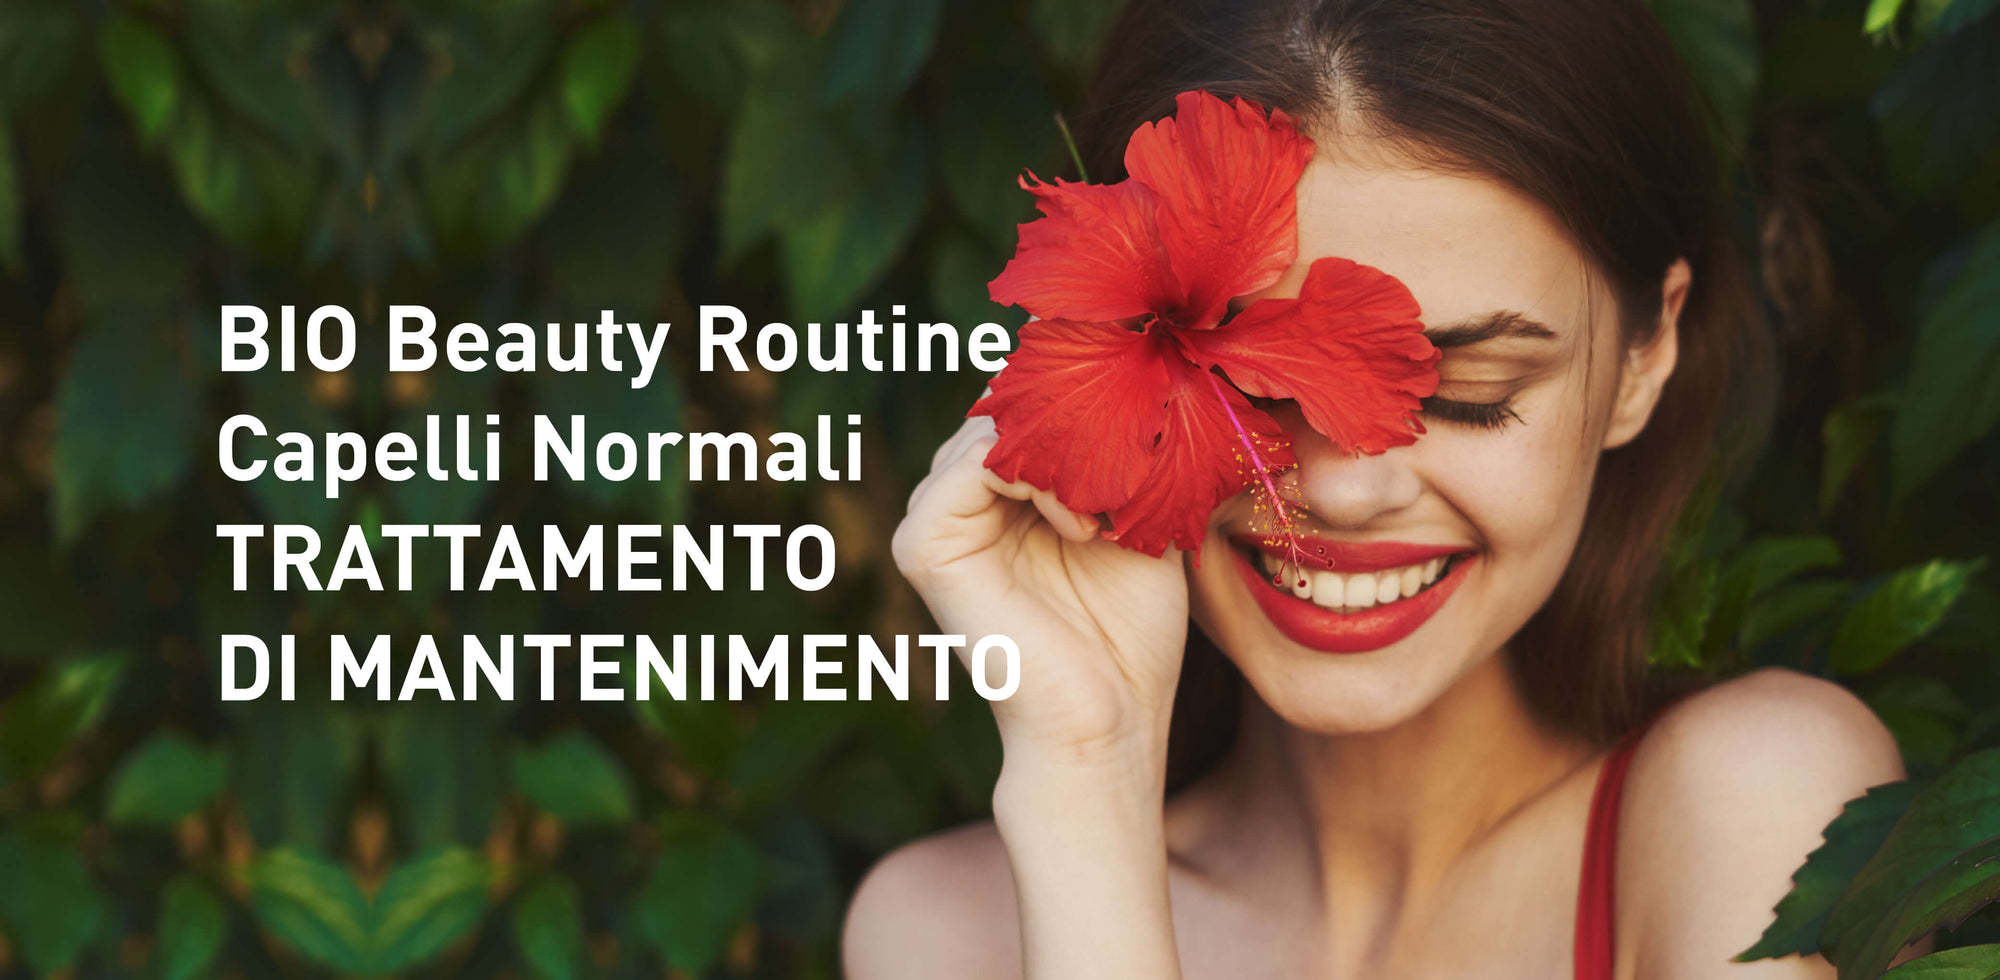 Bio Beauty Routine Capelli Normali: trattamento di mantenimento